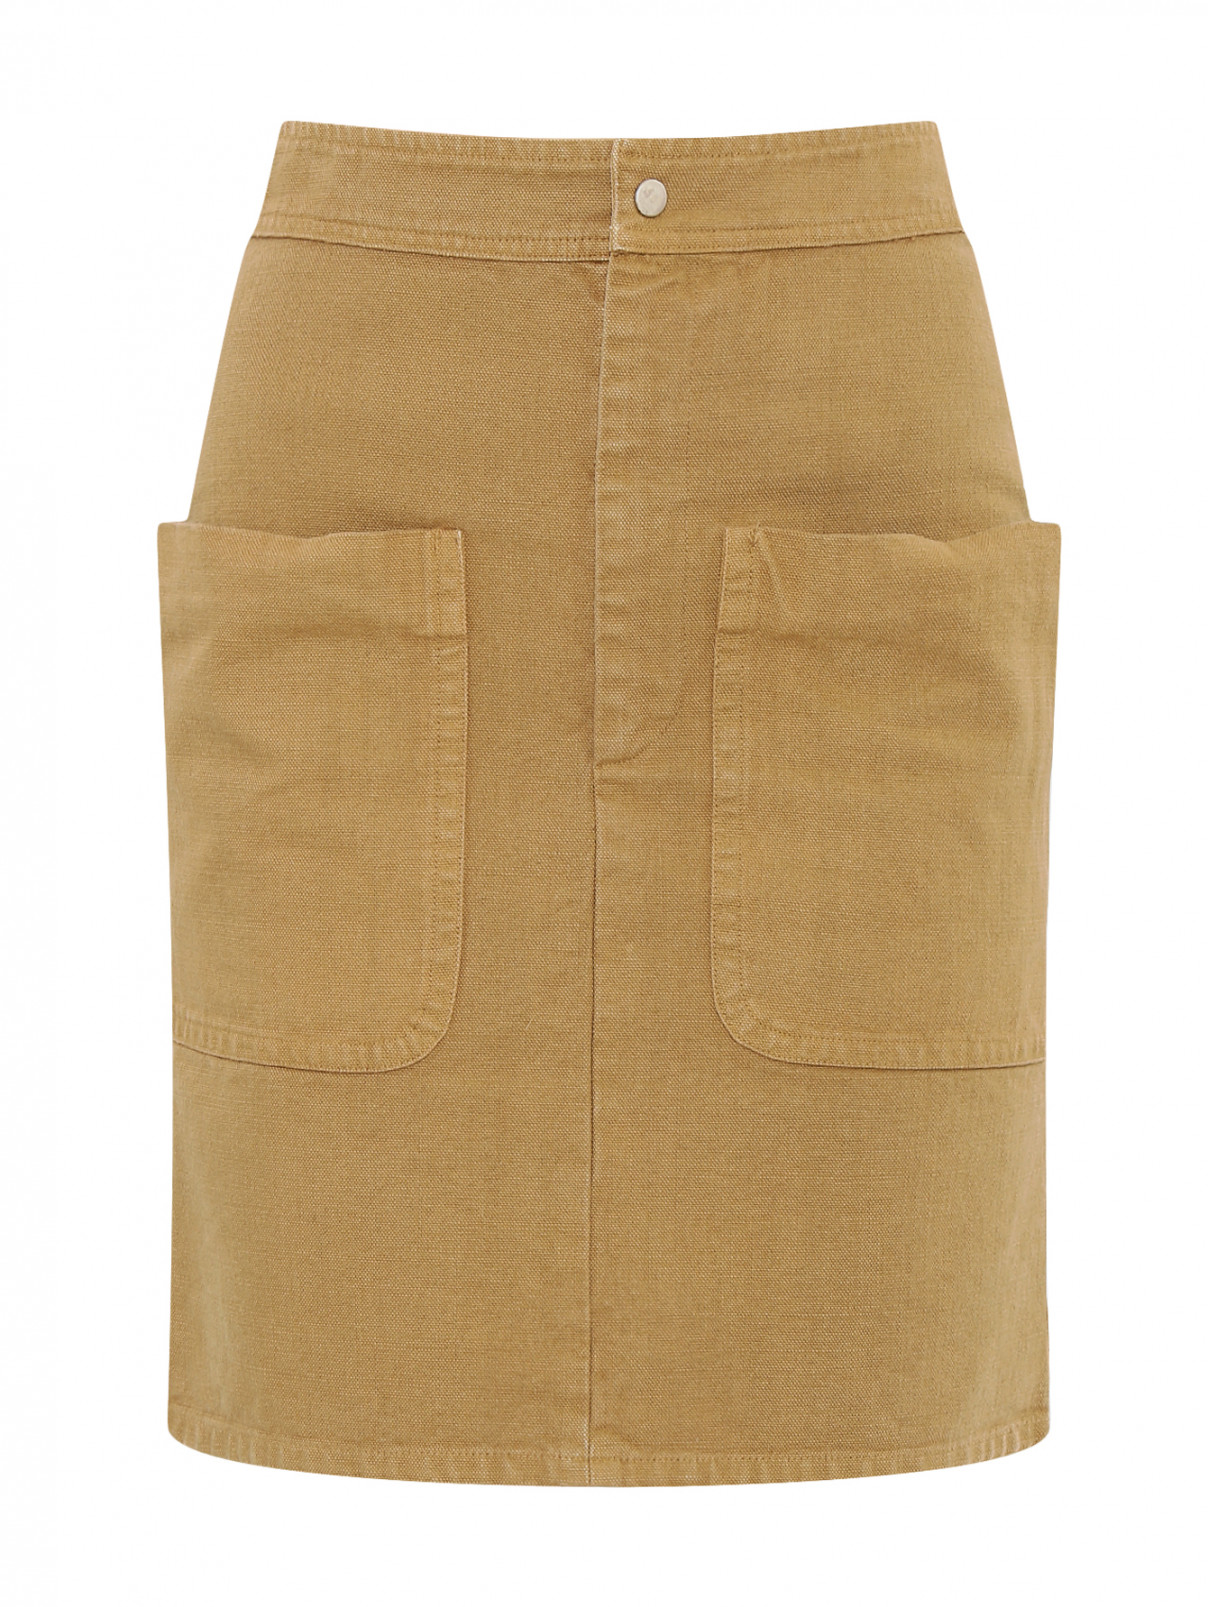 Юбка-мини из хлопка с накладными карманами Isabel Marant  –  Общий вид  – Цвет:  Бежевый